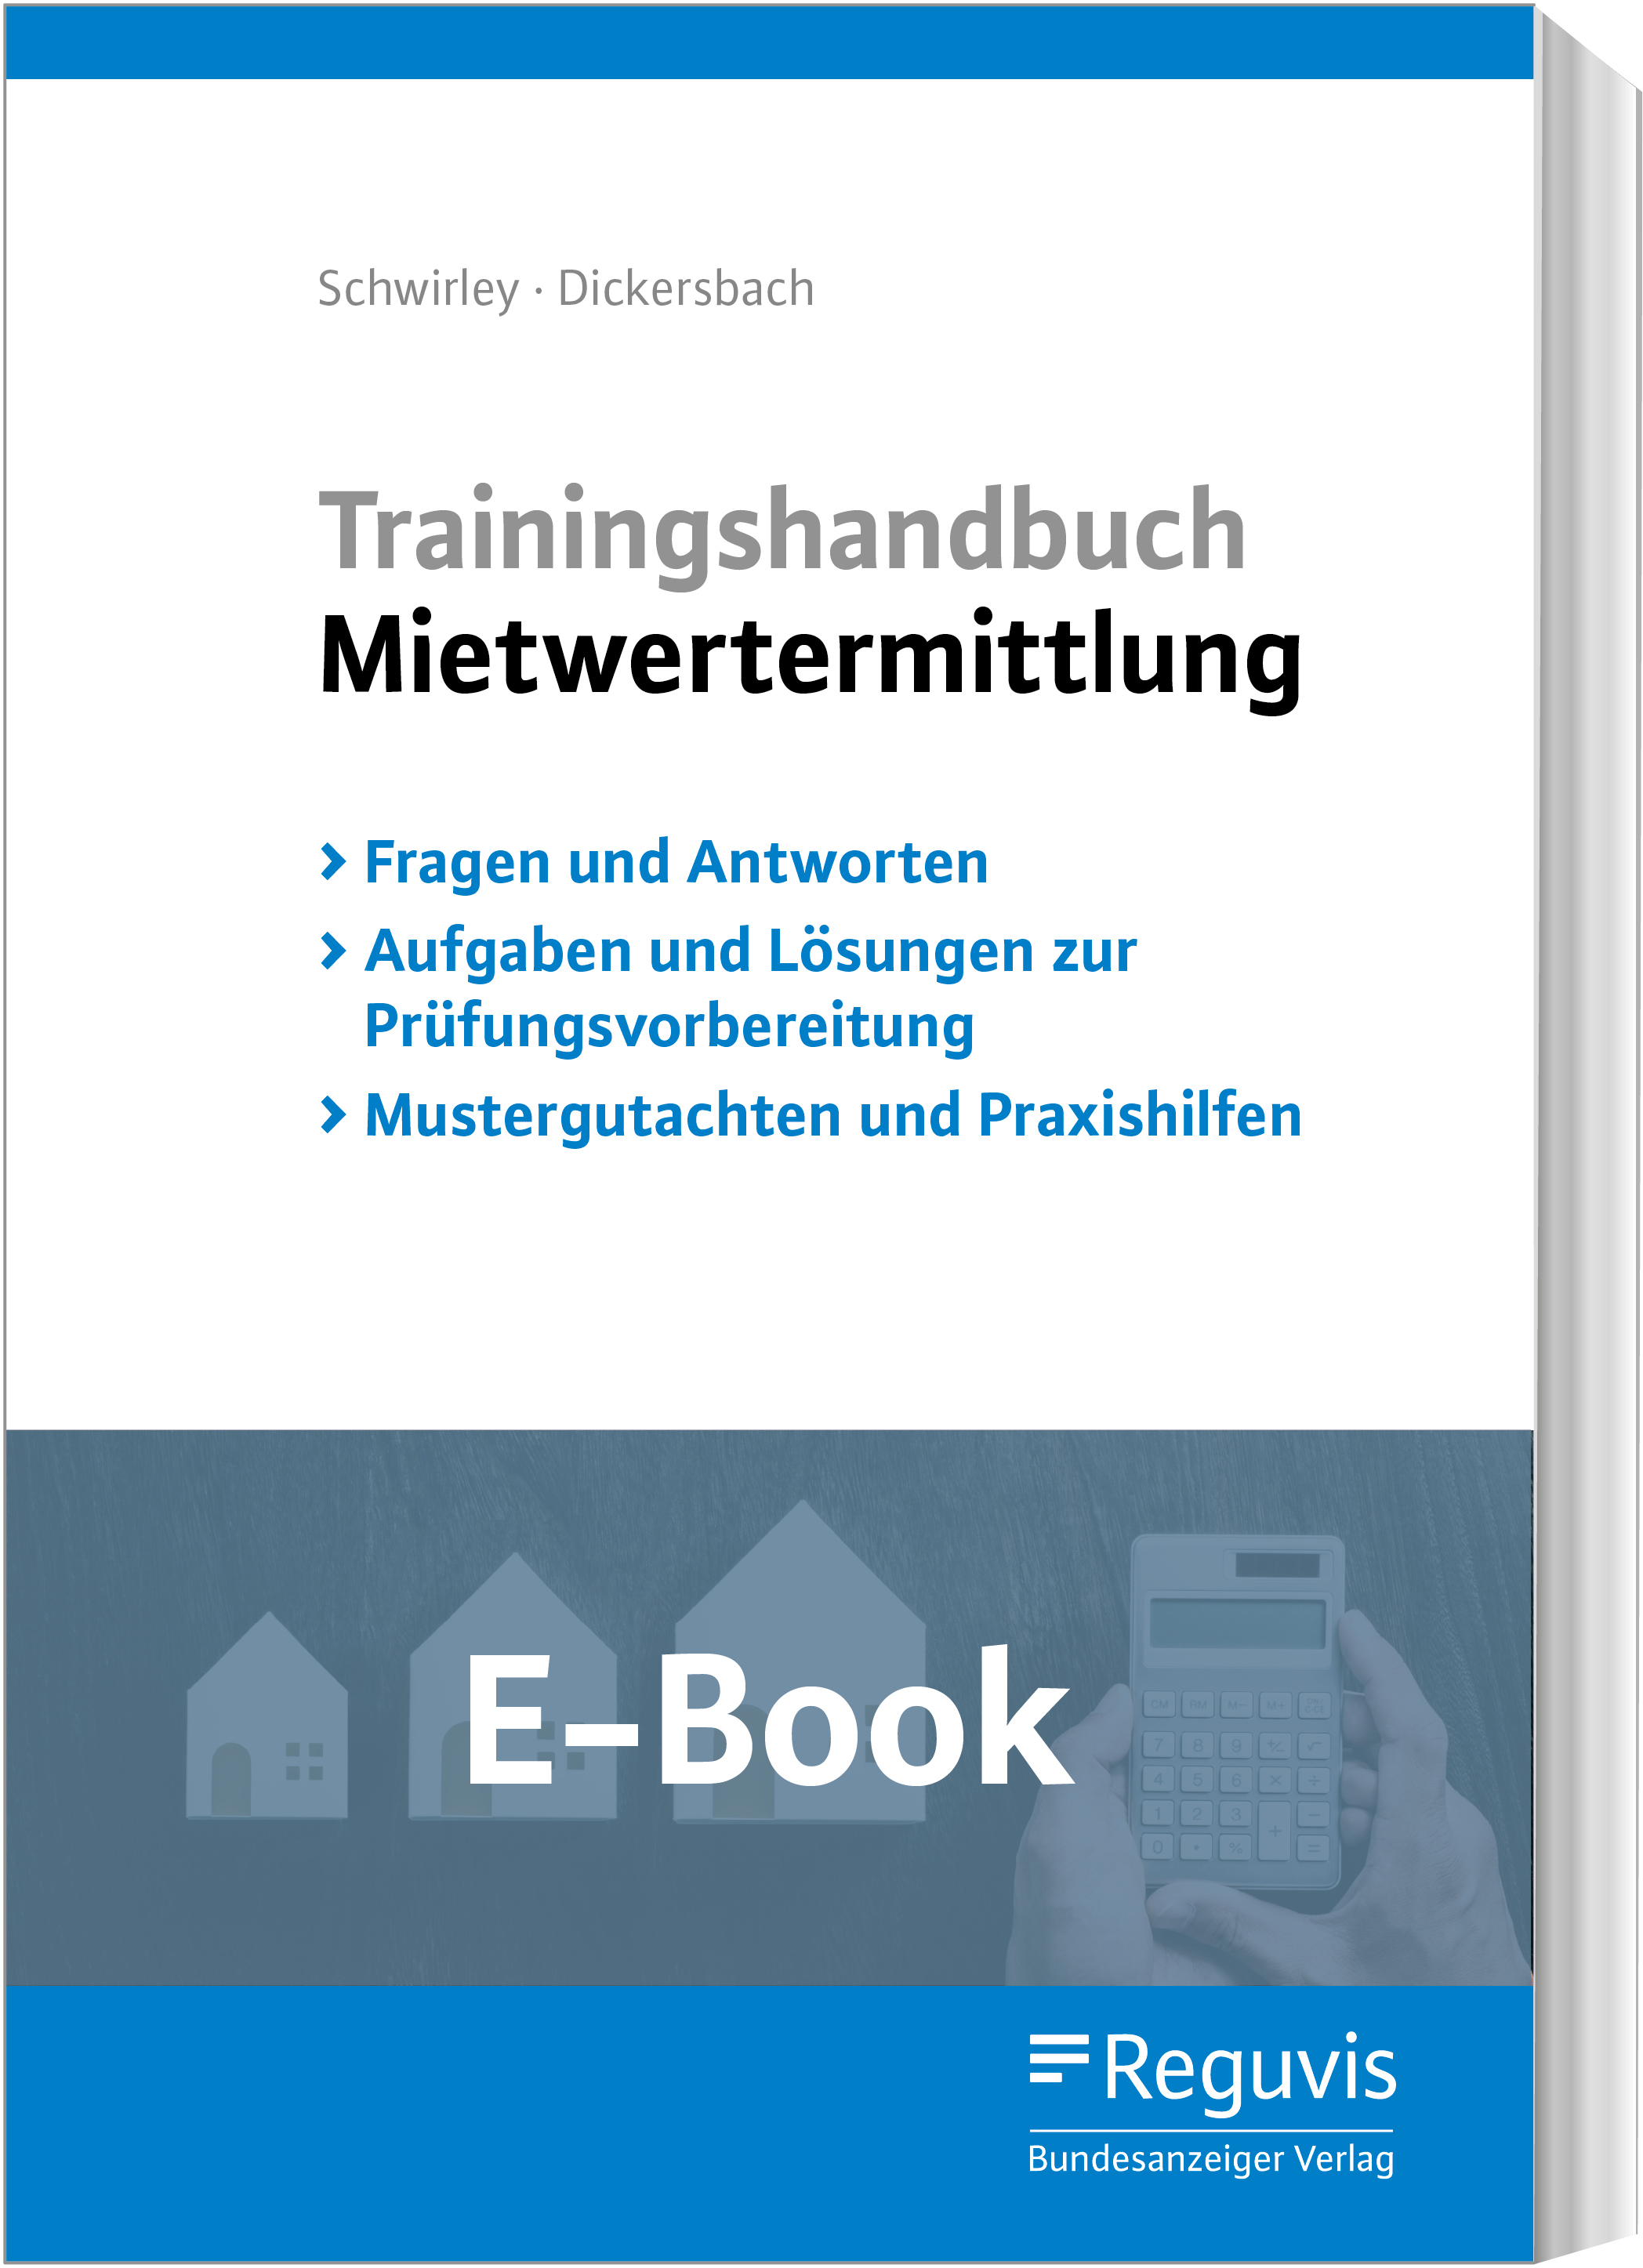 Trainingshandbuch Mietwertermittlung (E-Book)